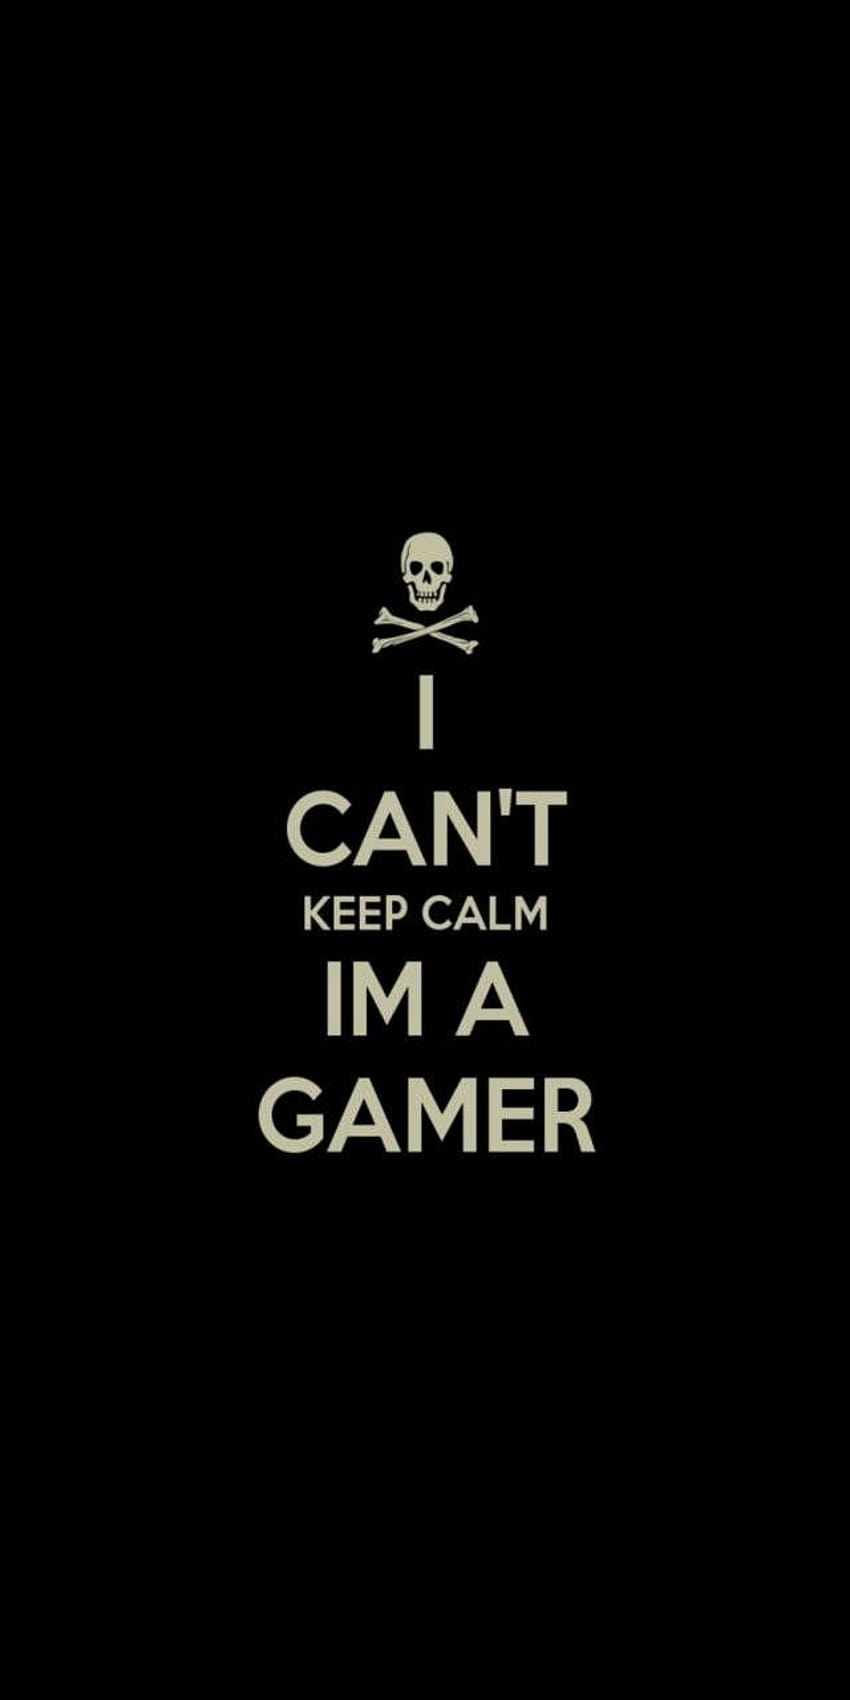 Keep calm gamer, keep calm mobile HD phone wallpaper